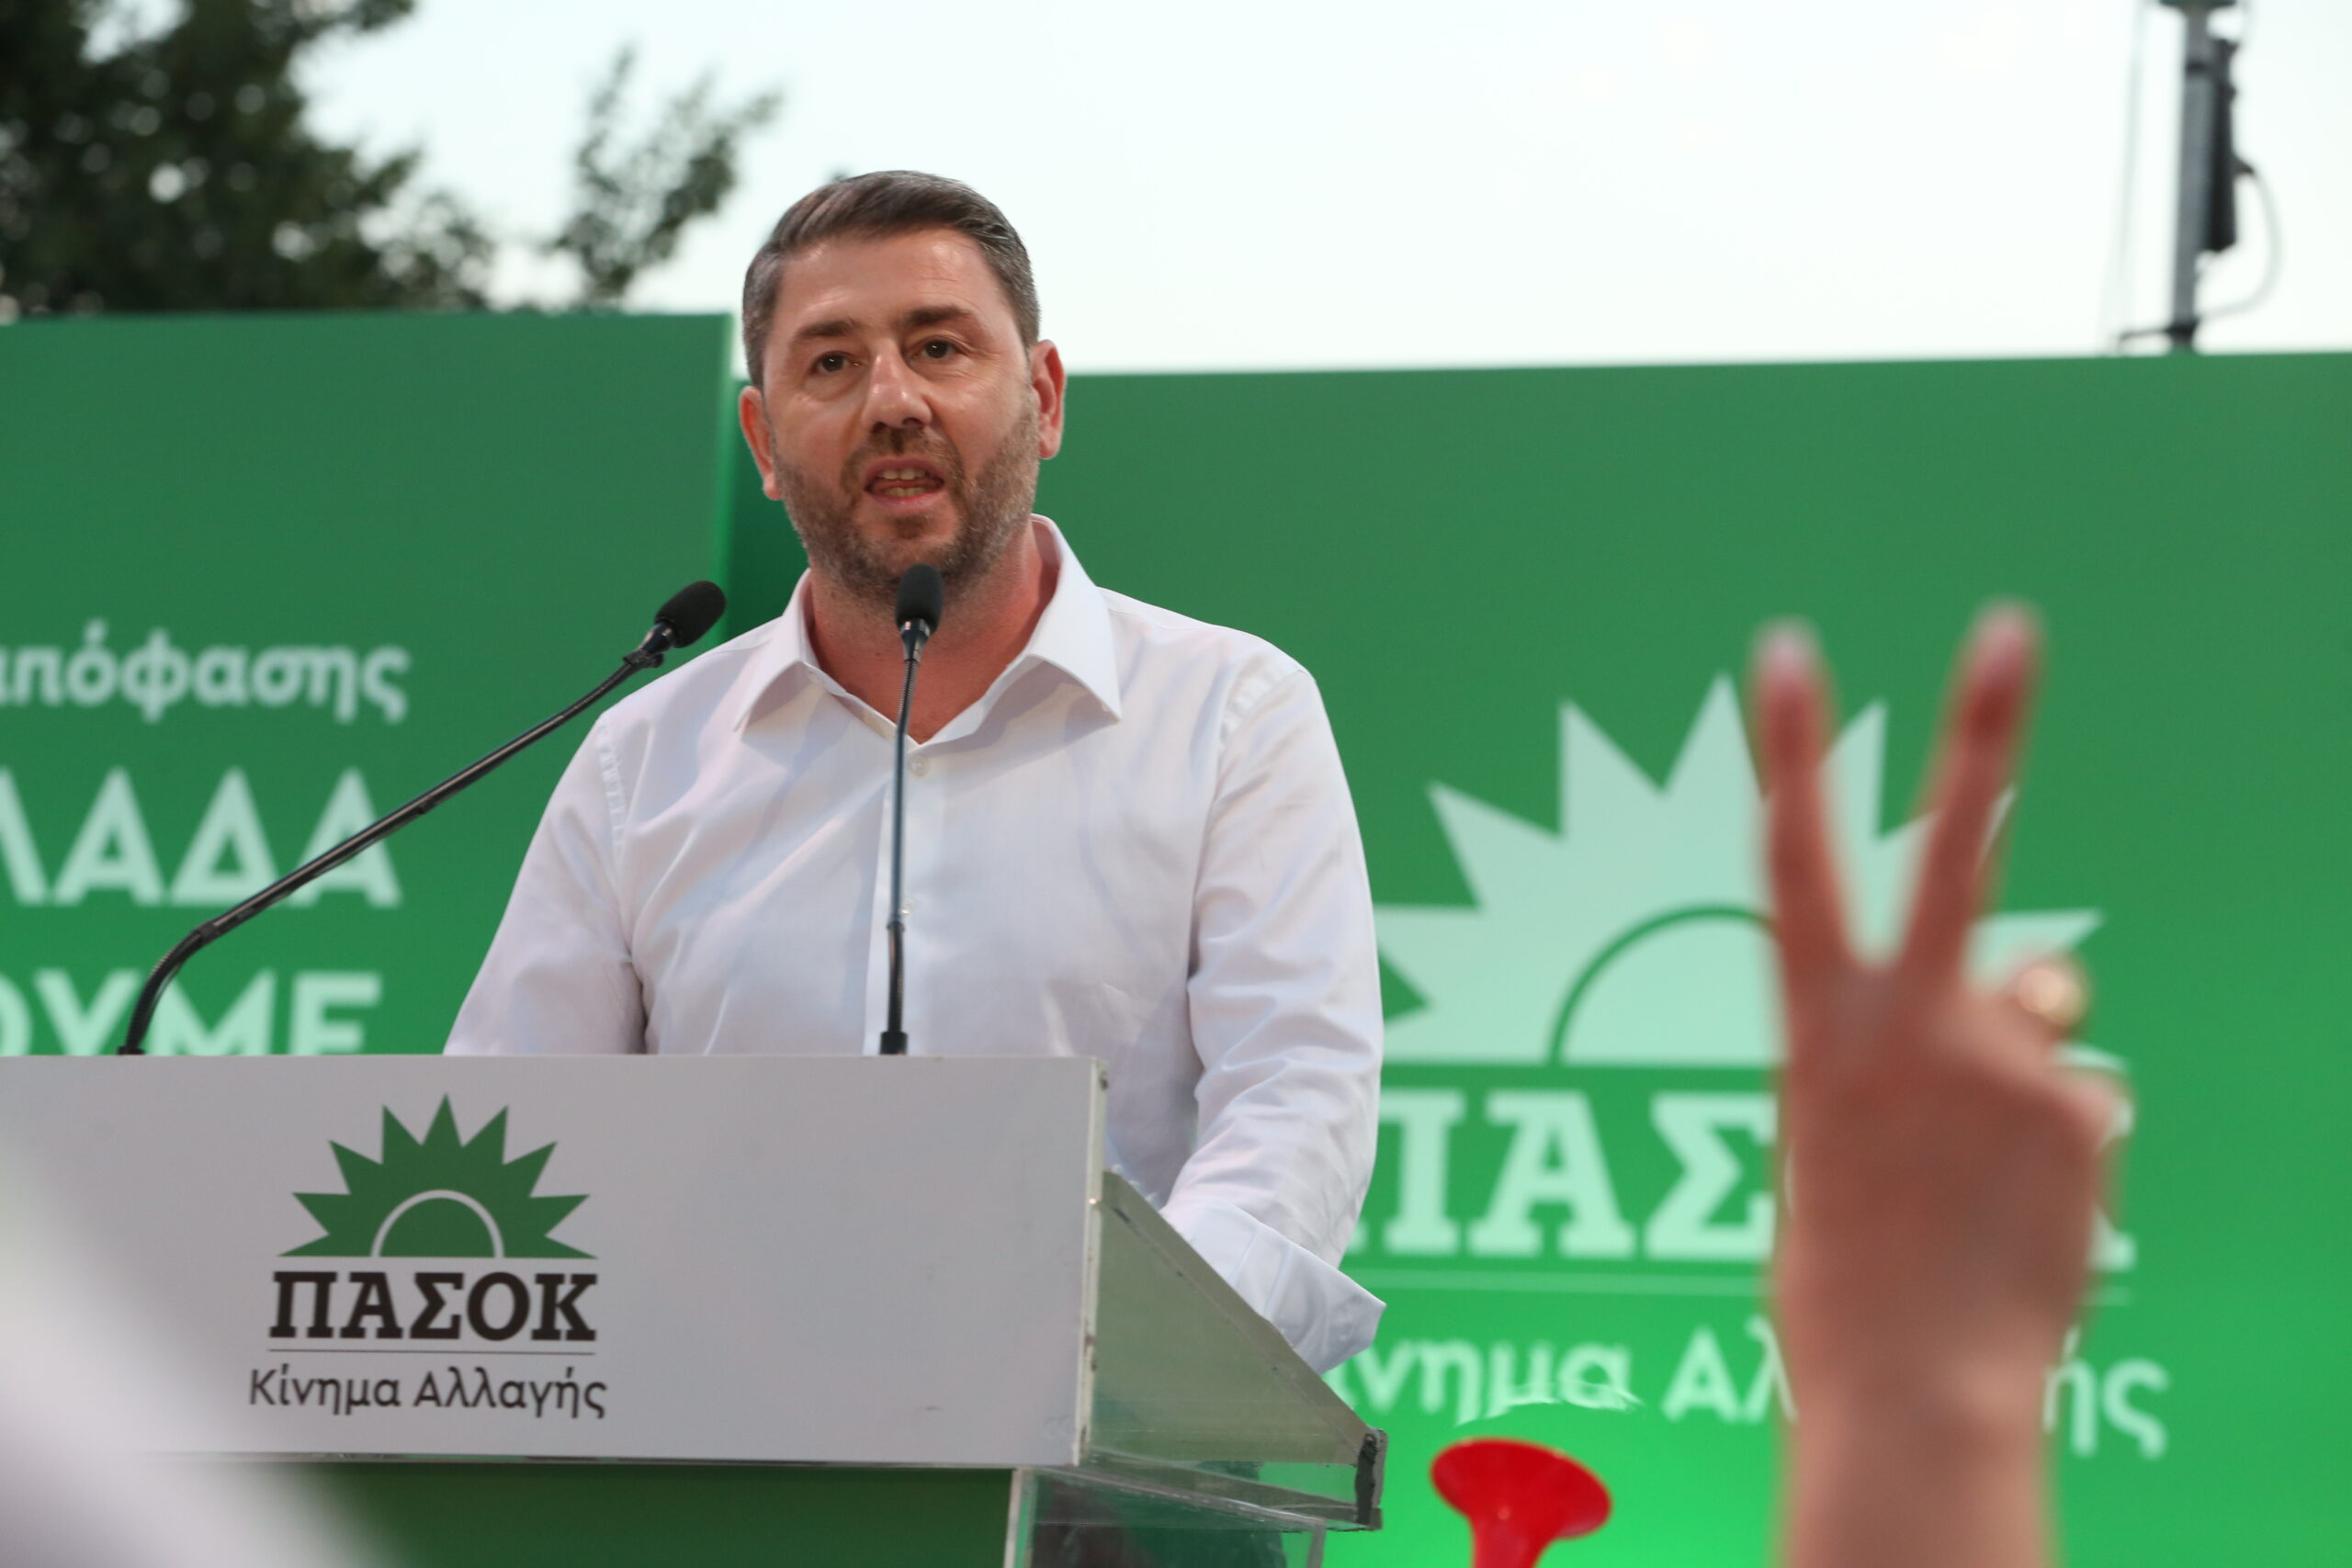 Ανδρουλάκης: Με το ΠΑΣΟΚ για να υπάρχει ισχυρή και αξιόπιστη αντιπολίτευση και κυβερνητική επιλογή